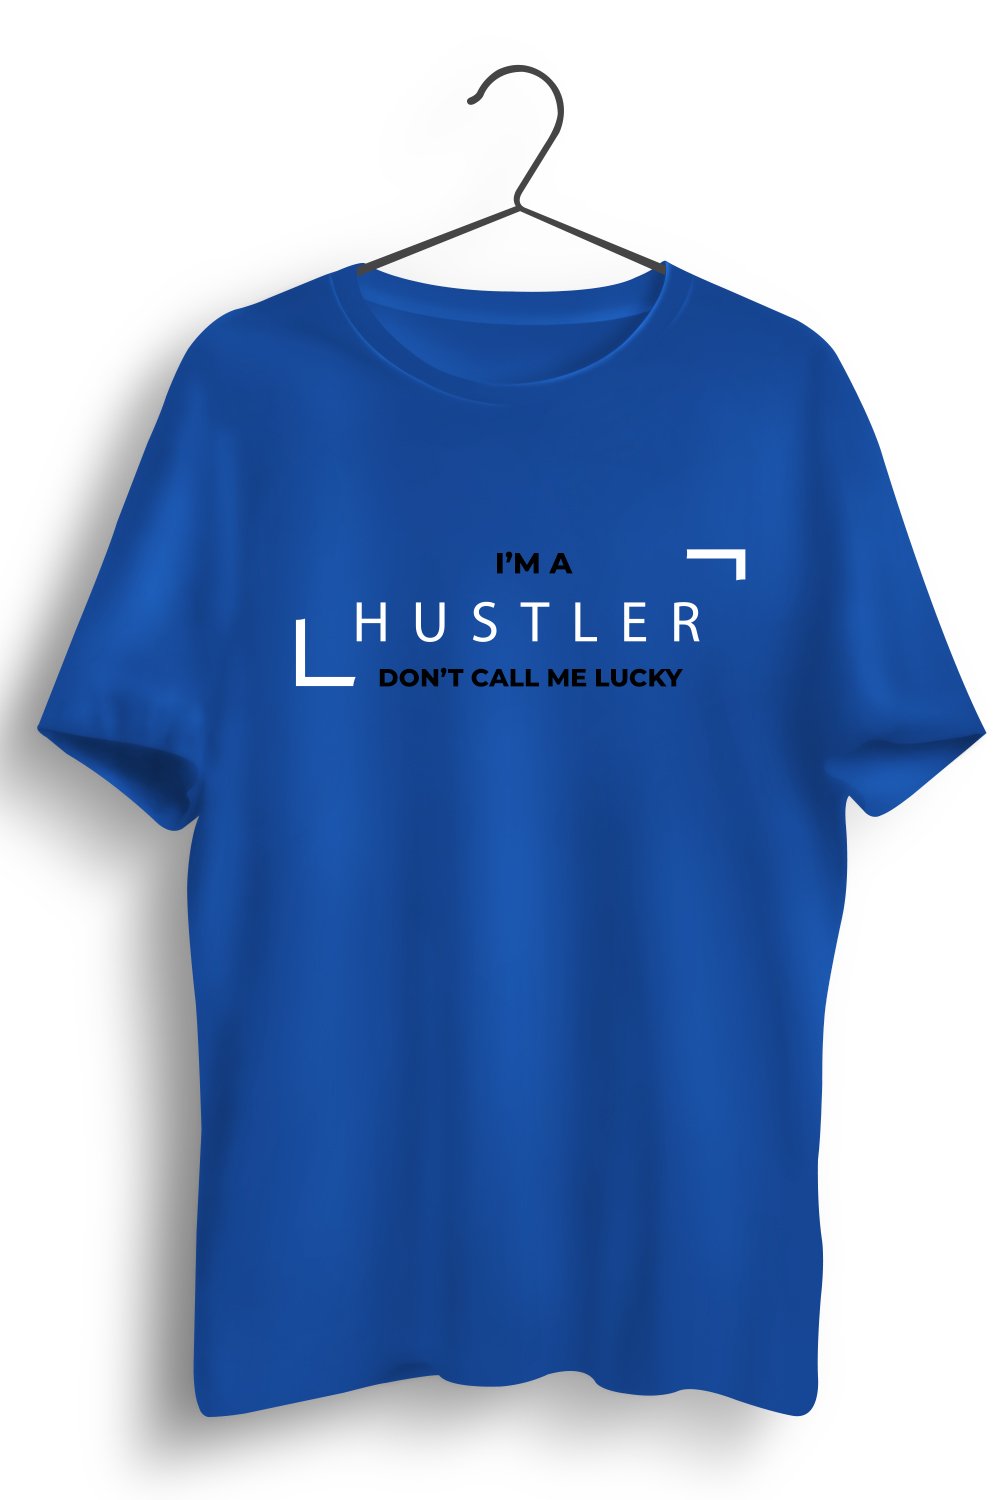 Hustler Graphic Printed Blue Tshirt